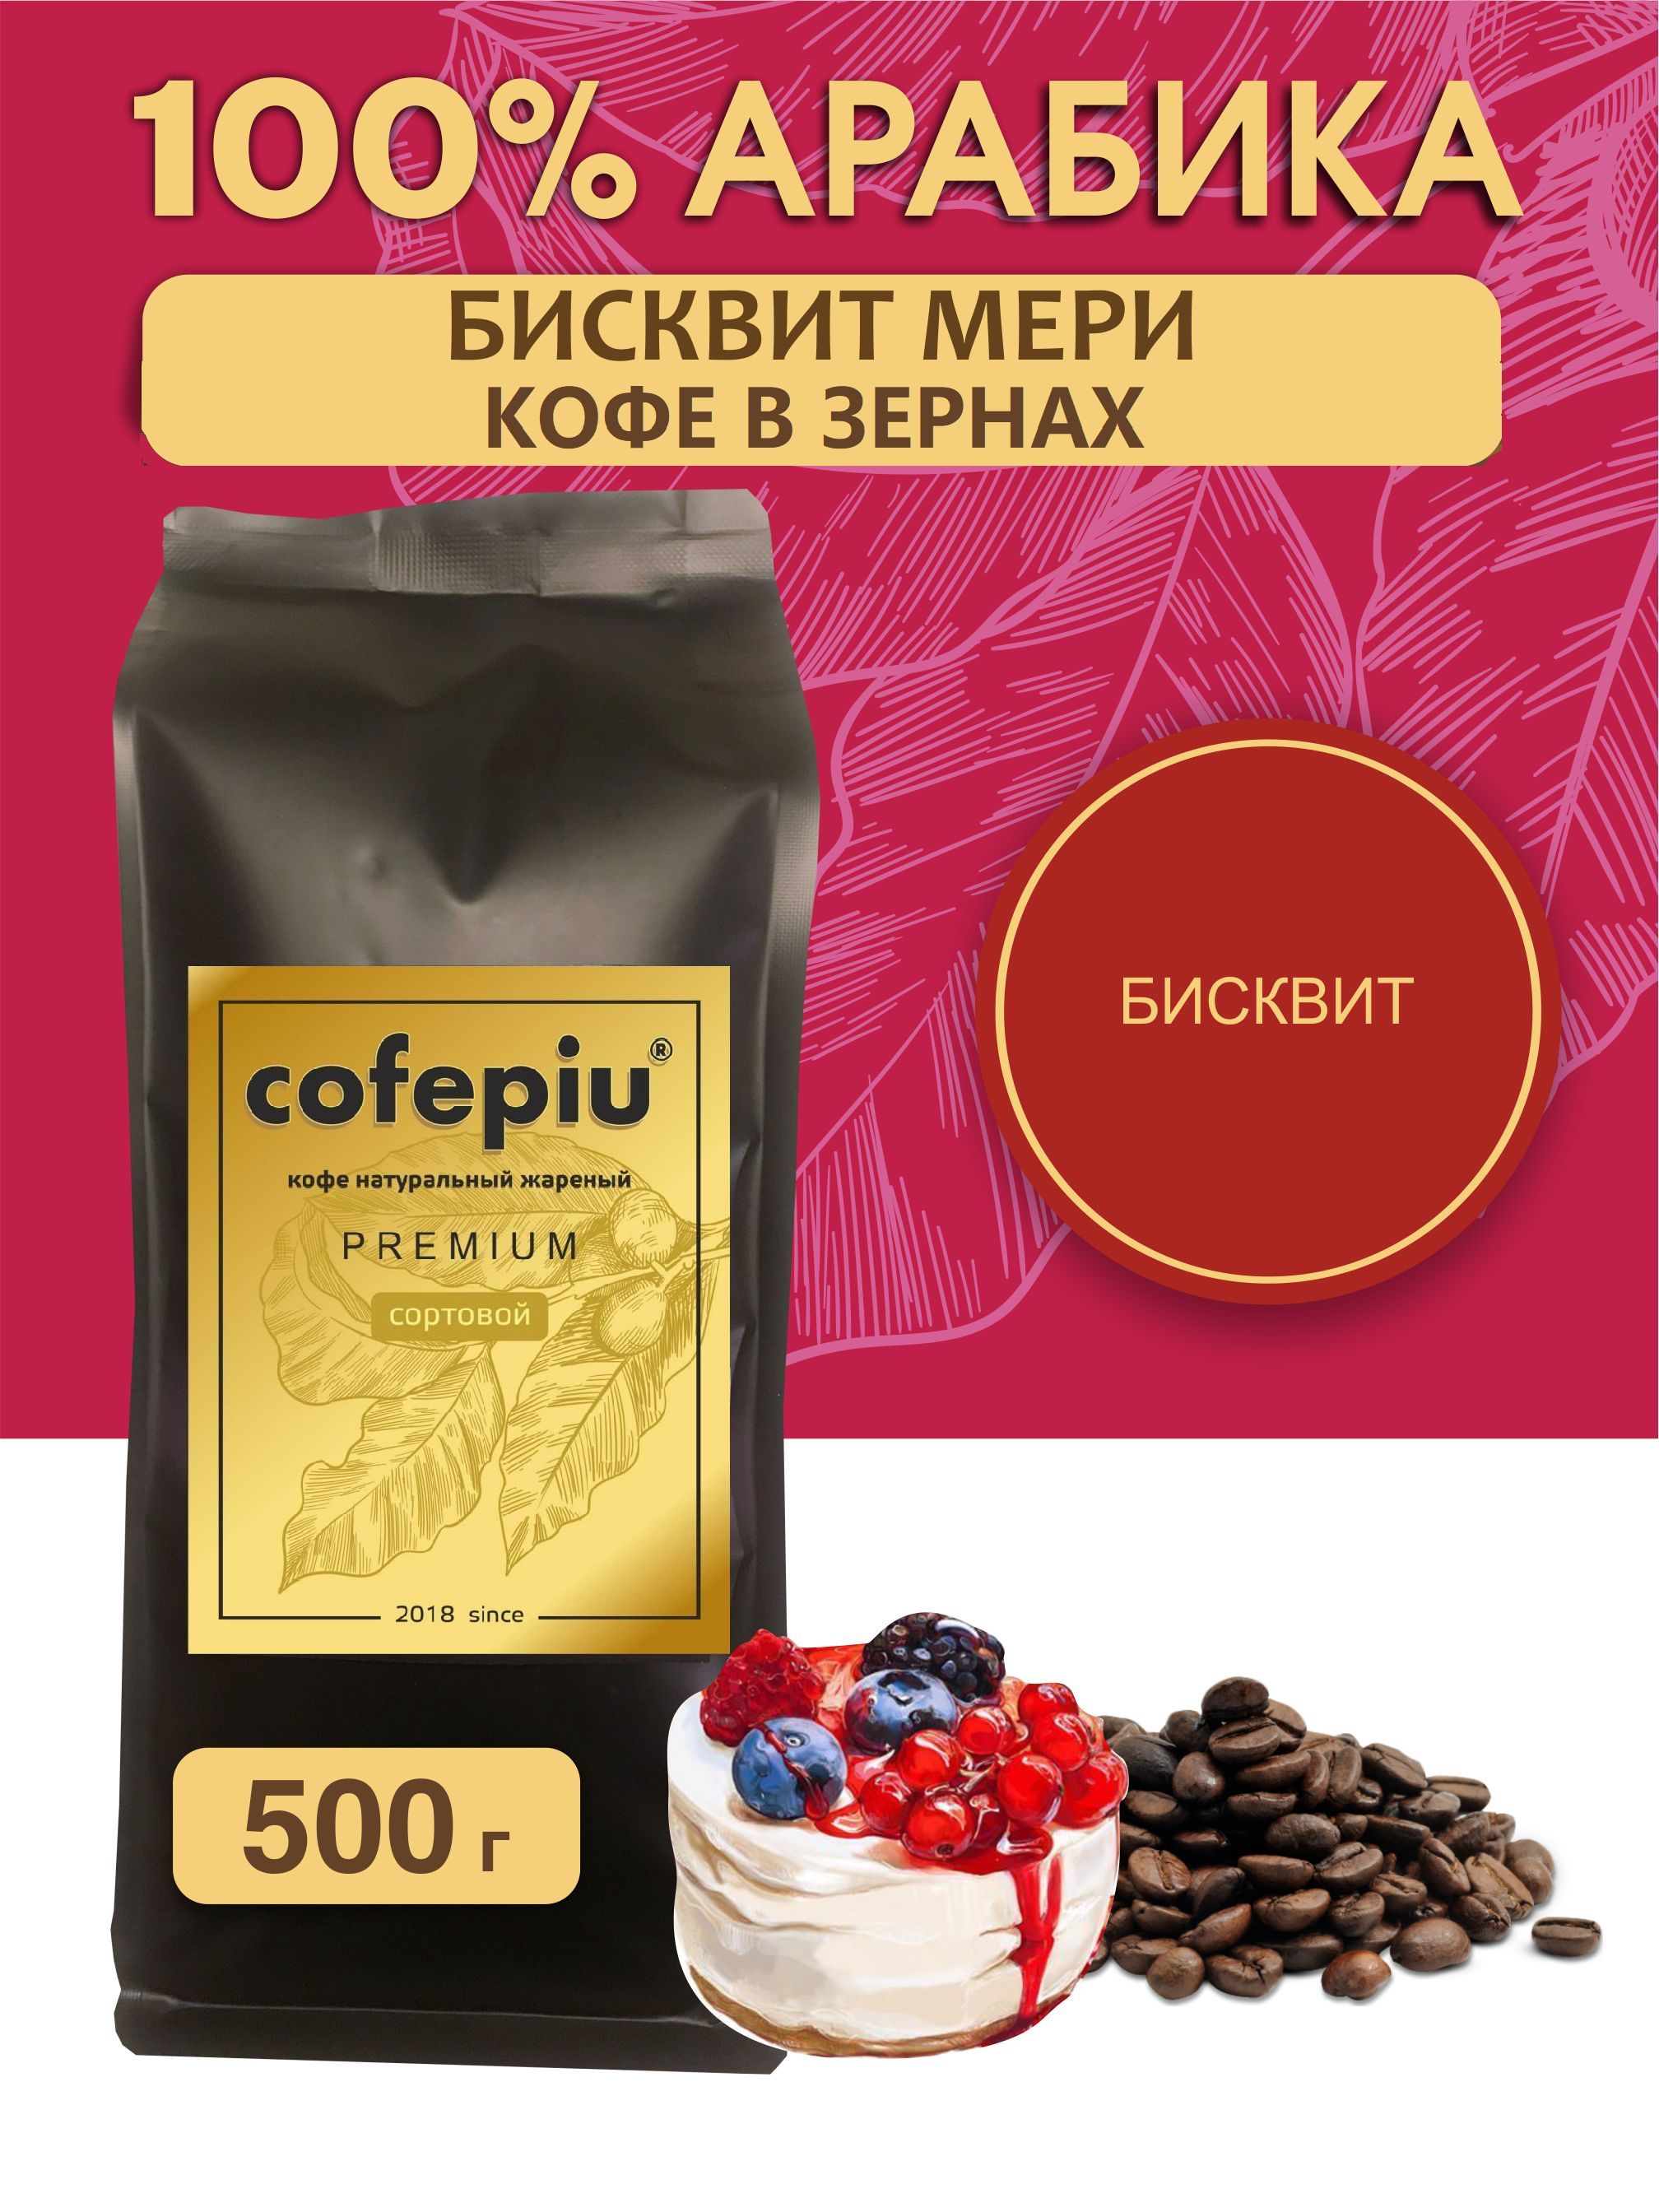 Кофе arabica зернах отзывы. Вкусный кофе в зернах топ 10. Купить кофе Сантос Бразилия в зернах Zepho.